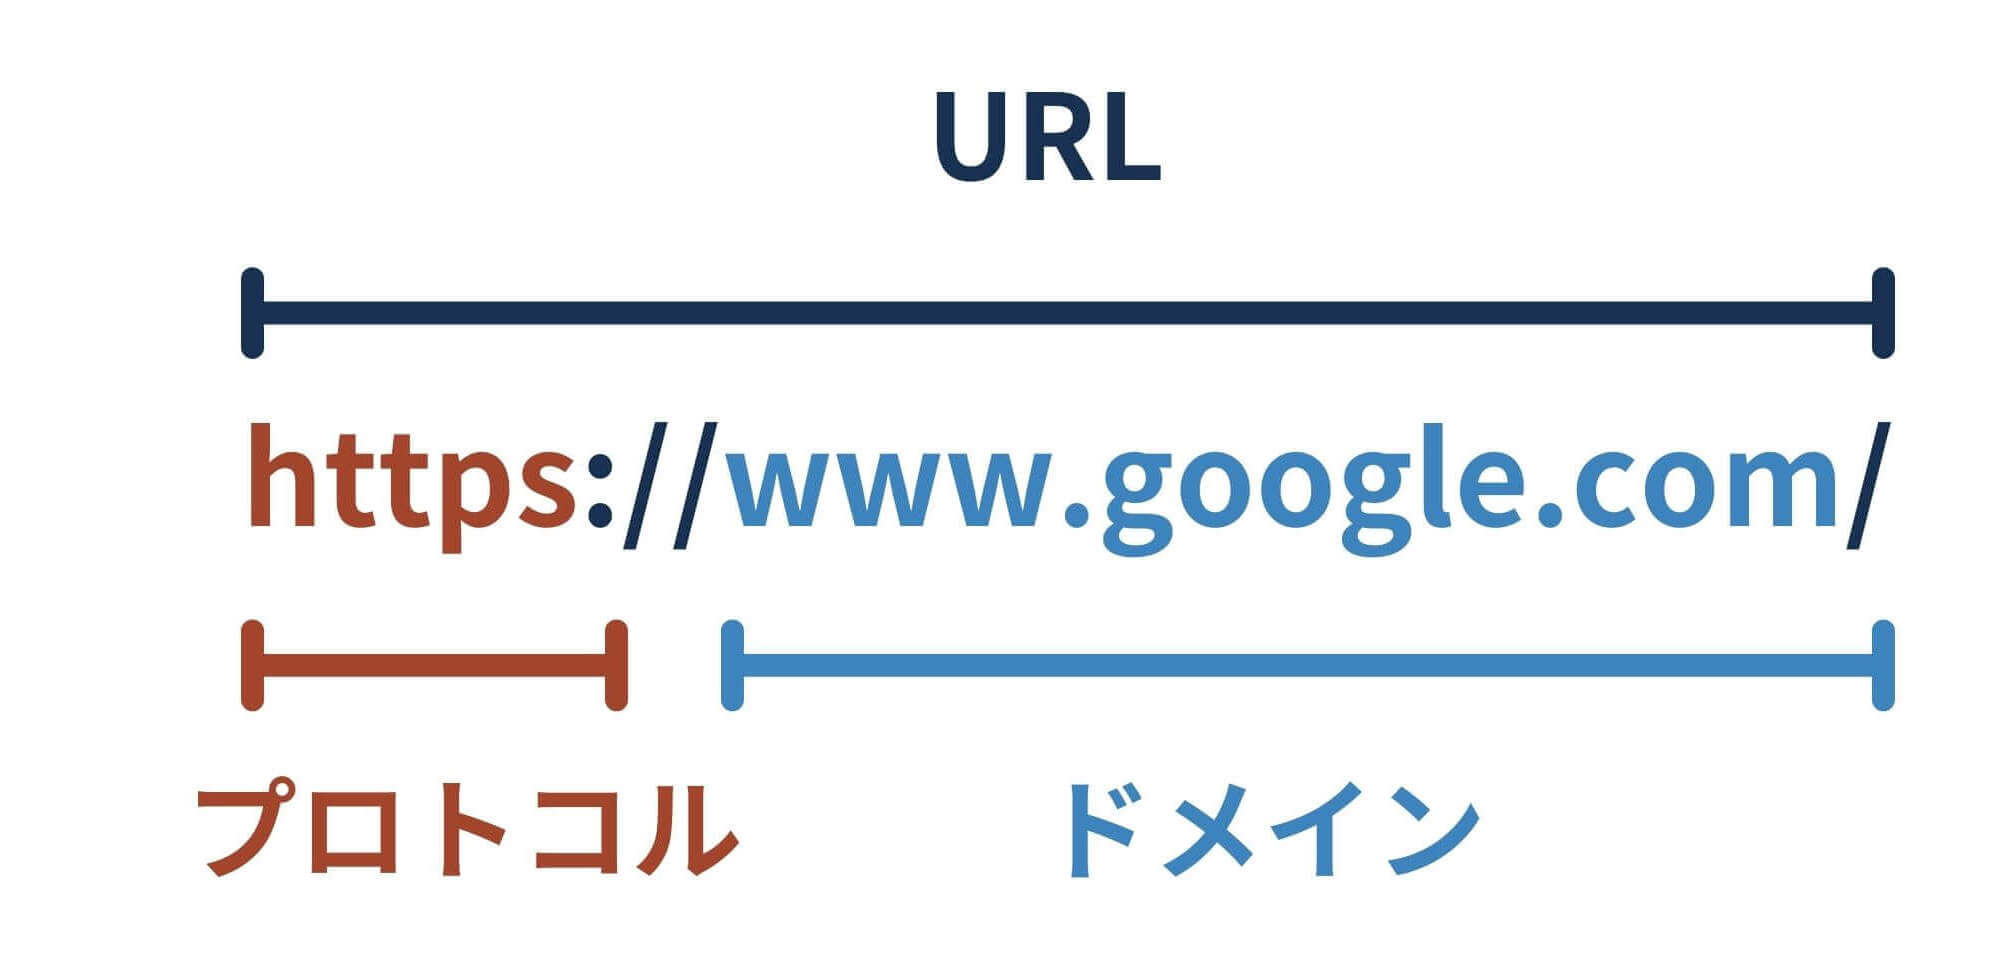 URLの構成プロトコルとドメイン